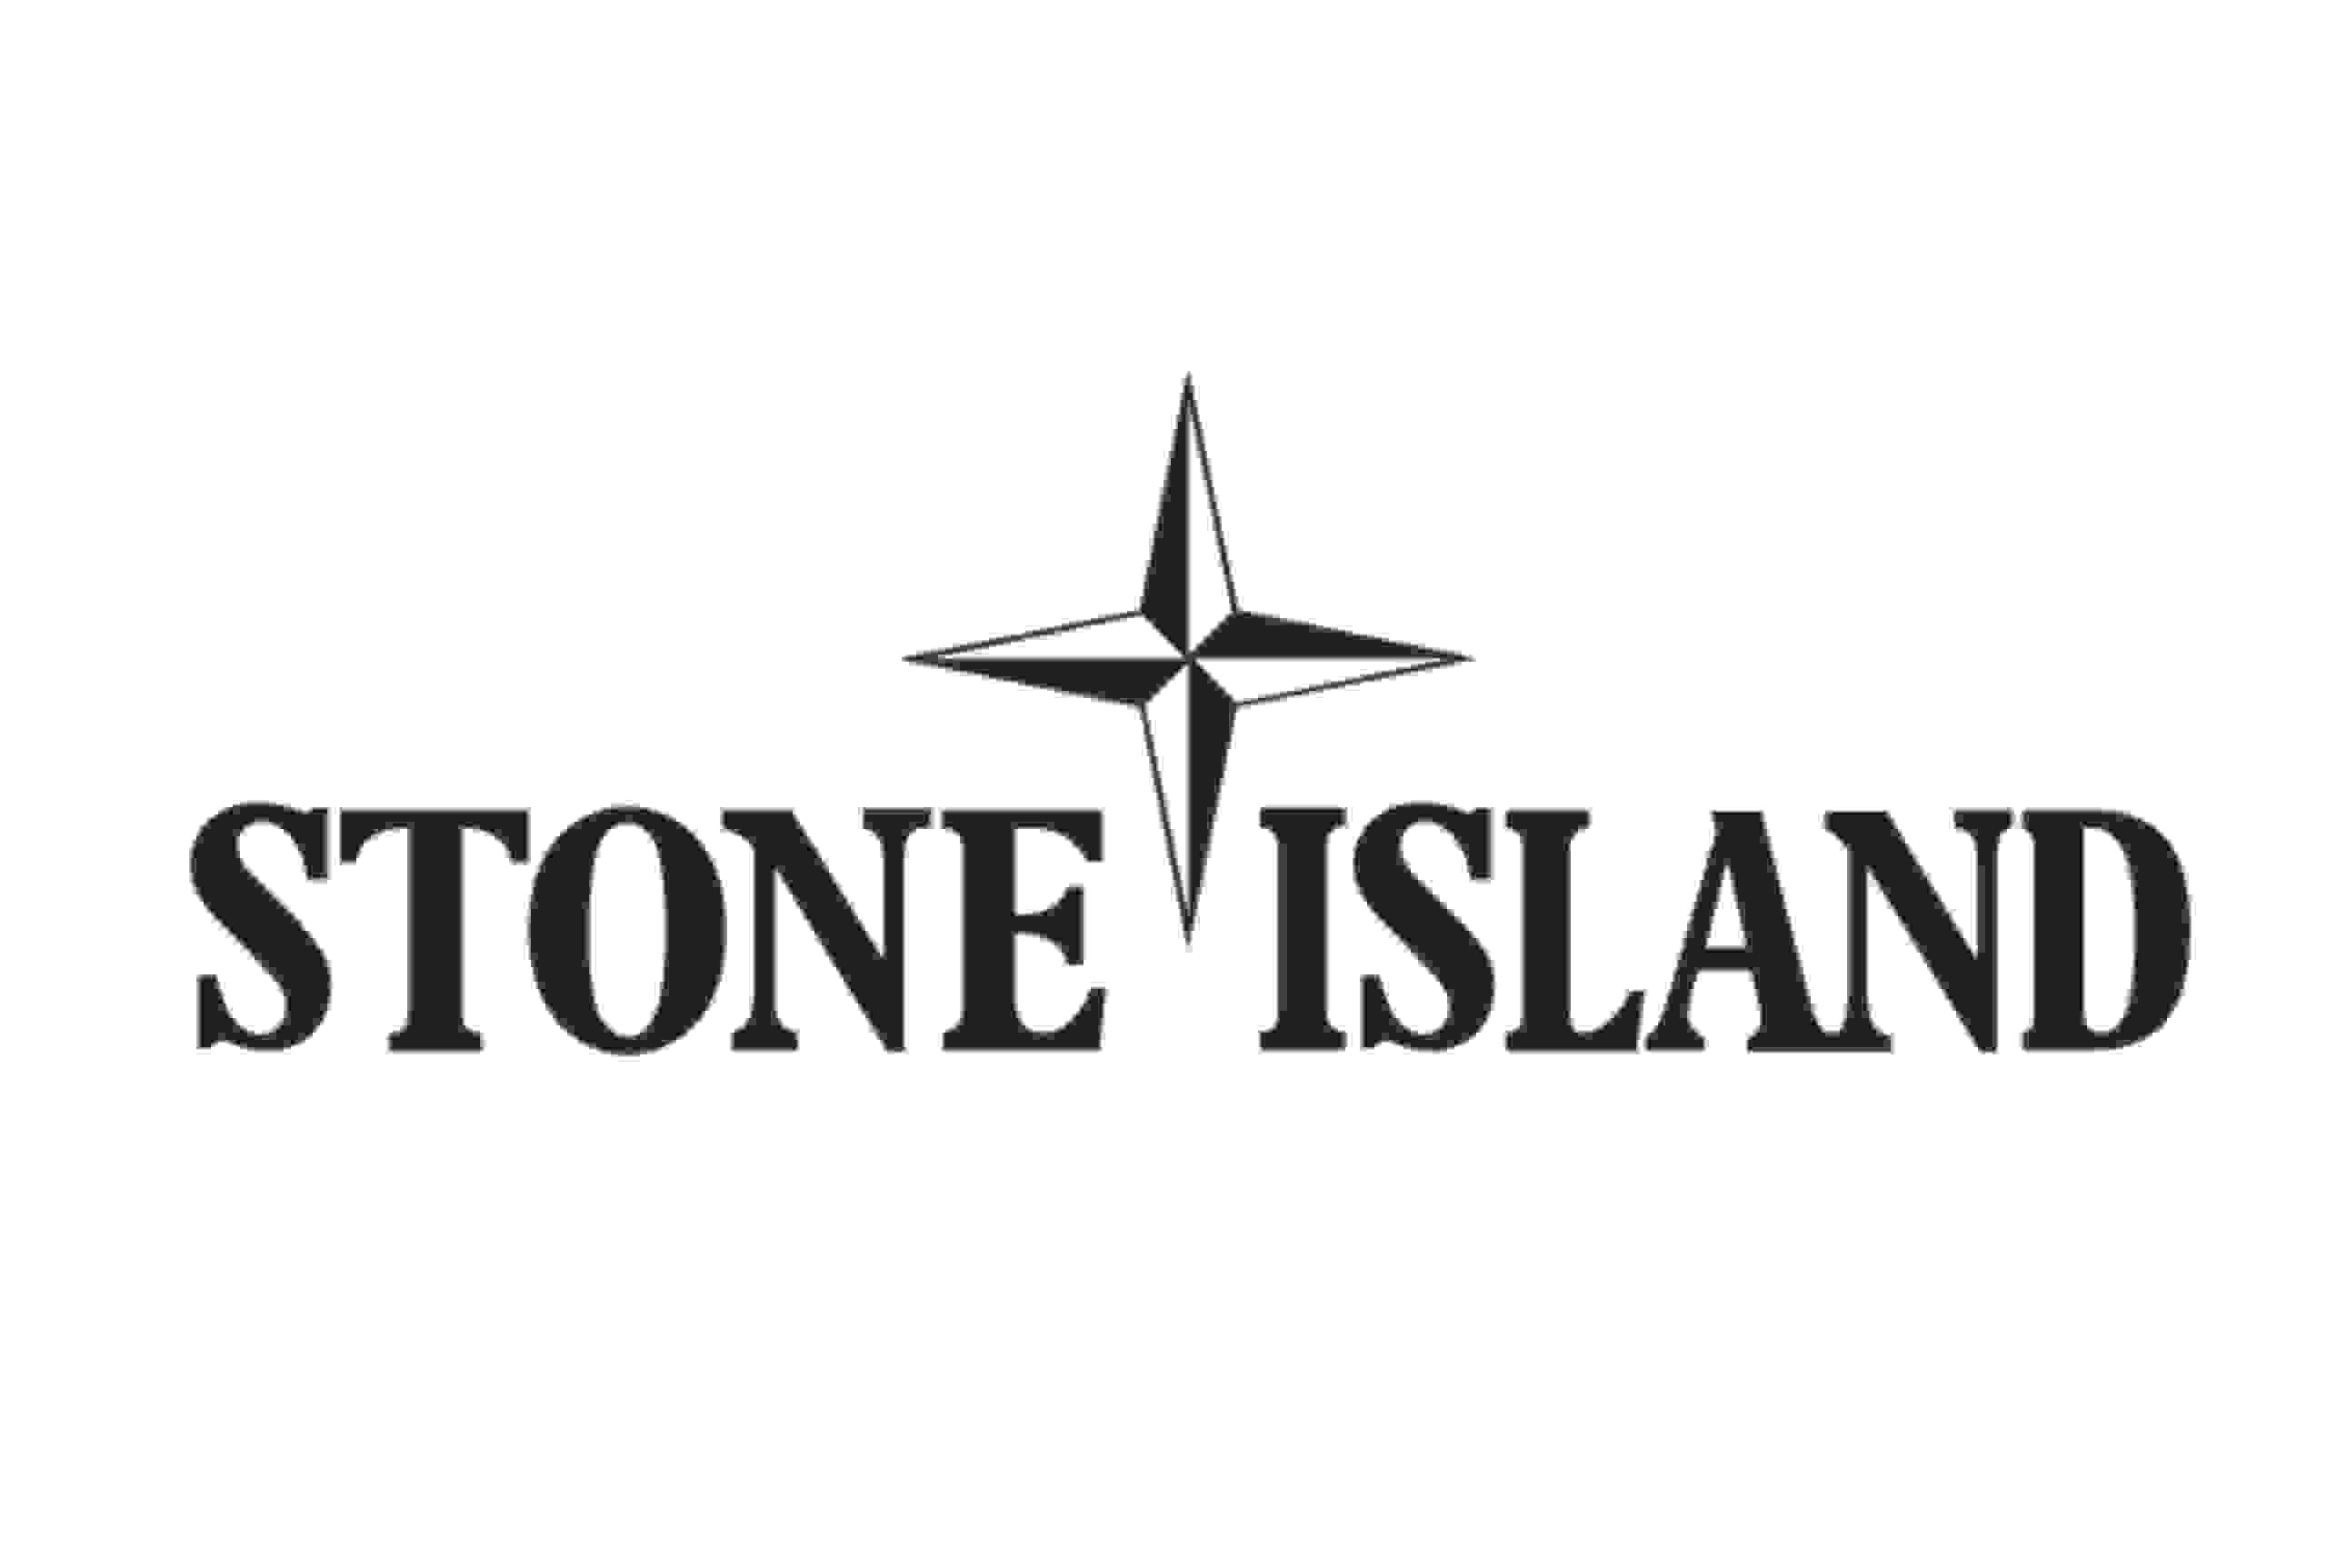 Island значок. Стон Исланд. Стон Исланд логотип. Стон Айленд логотип 1920. Stone Island итальянский бренд.